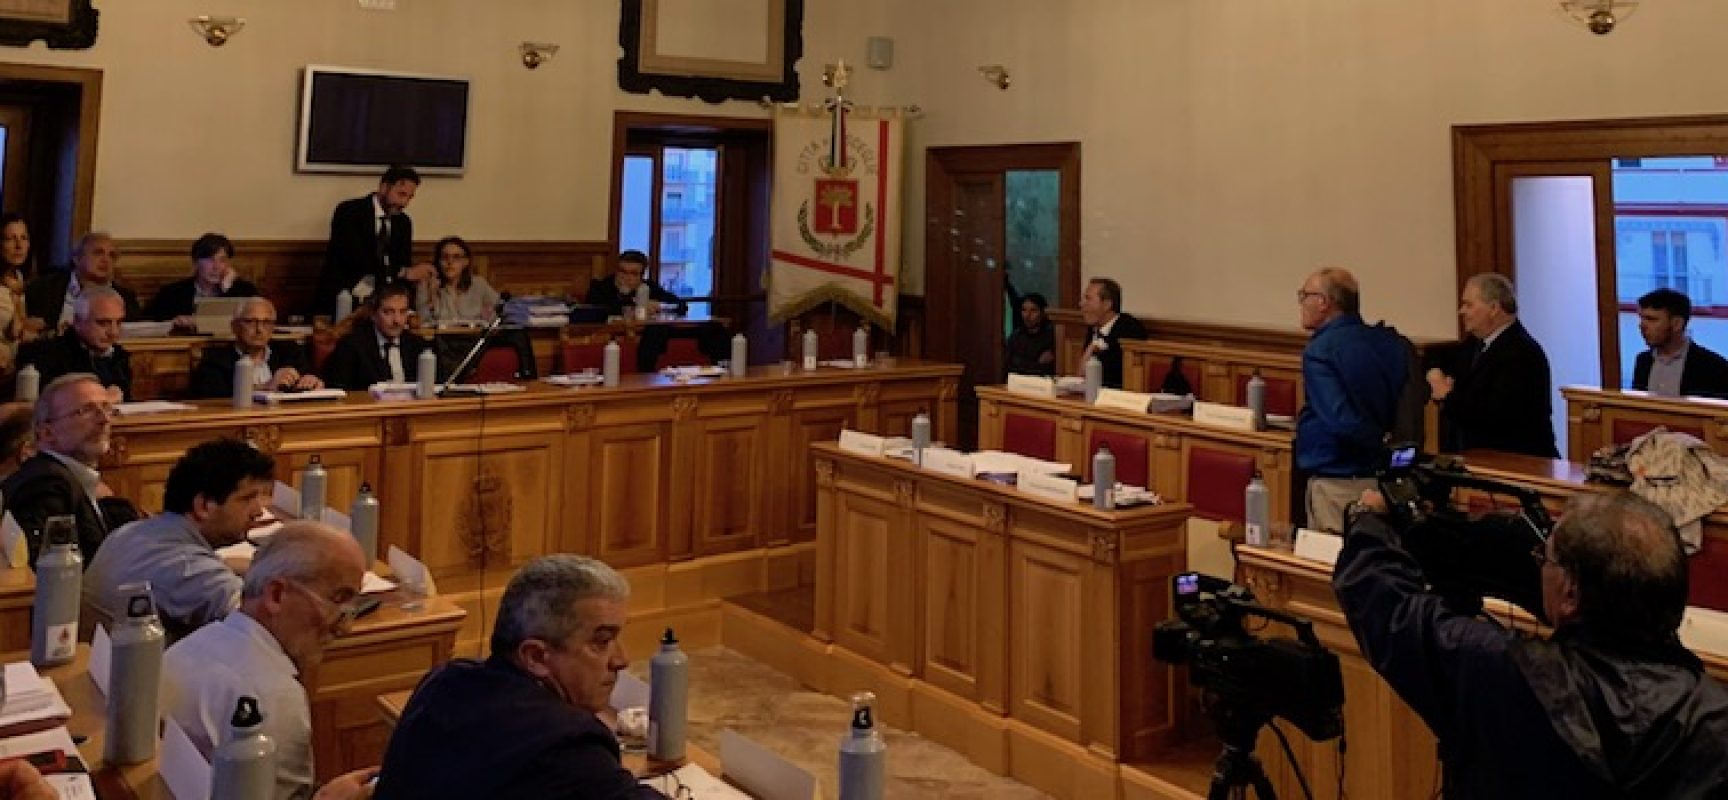 Cinque consiglieri comunali di opposizione fanno ricorso al Tar su bilancio previsione 2019-21